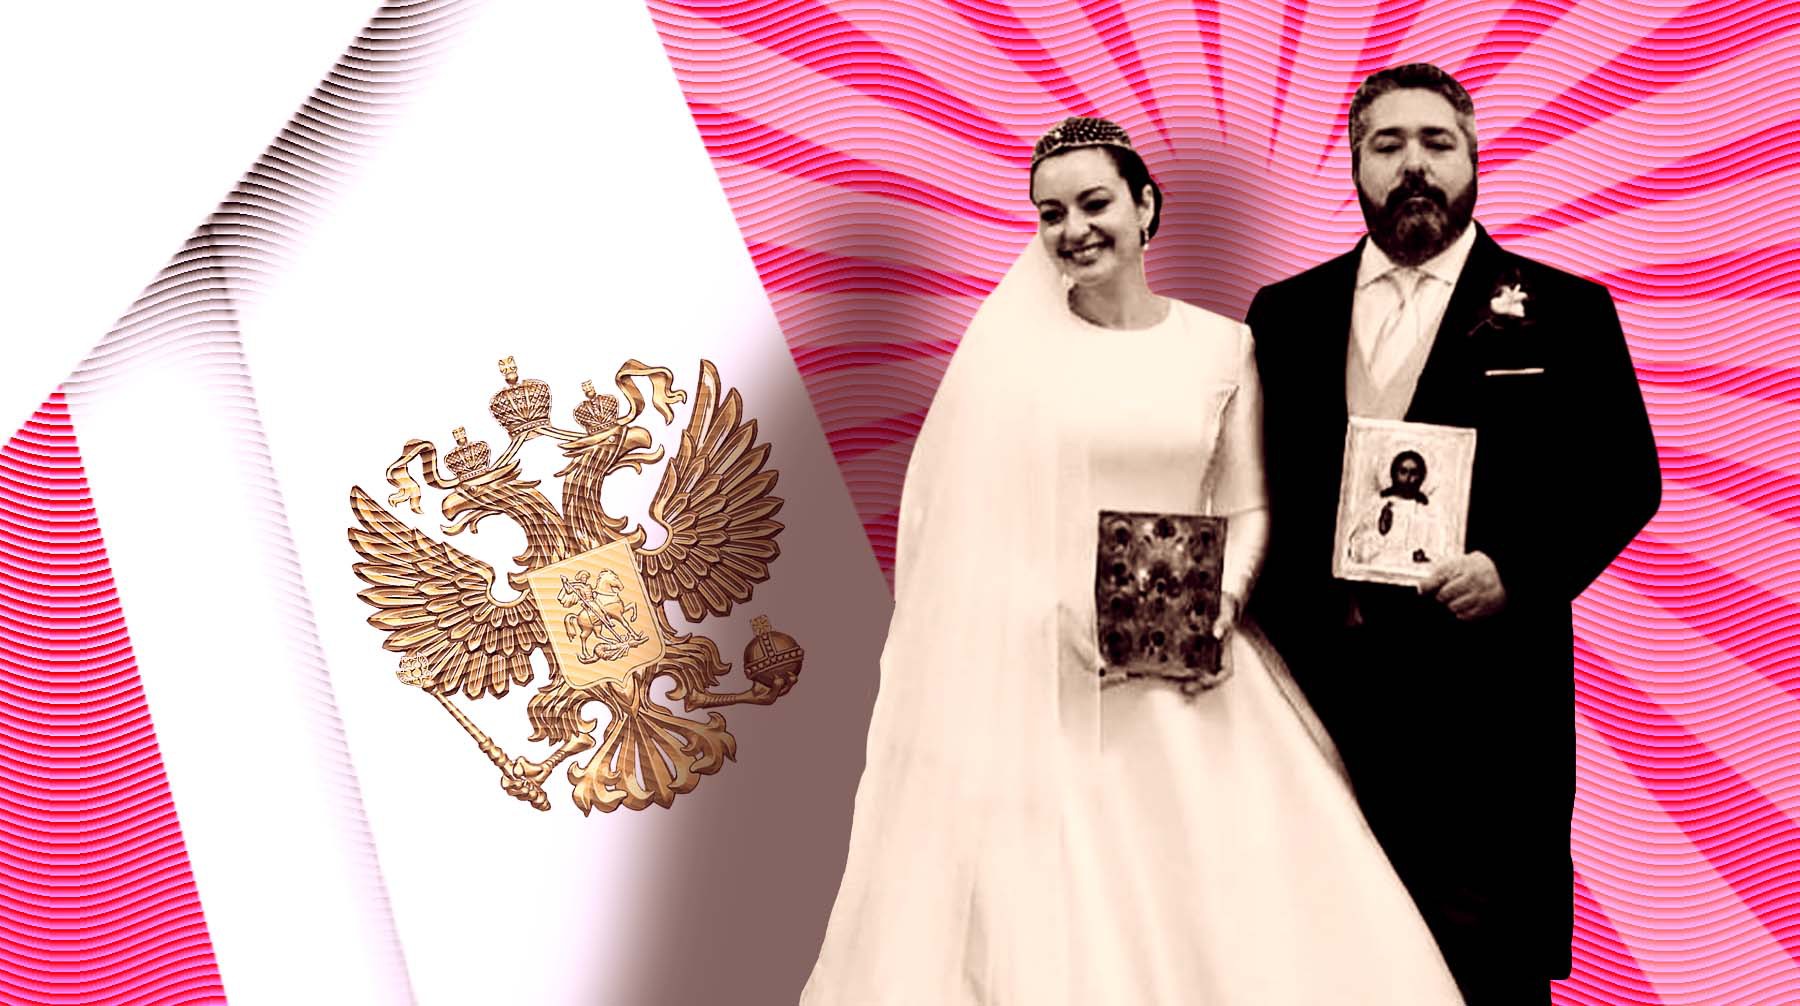 Dailystorm - Историк намекнул, кто мог организовать помпезное венчание потомка Романовых в Исаакиевском соборе